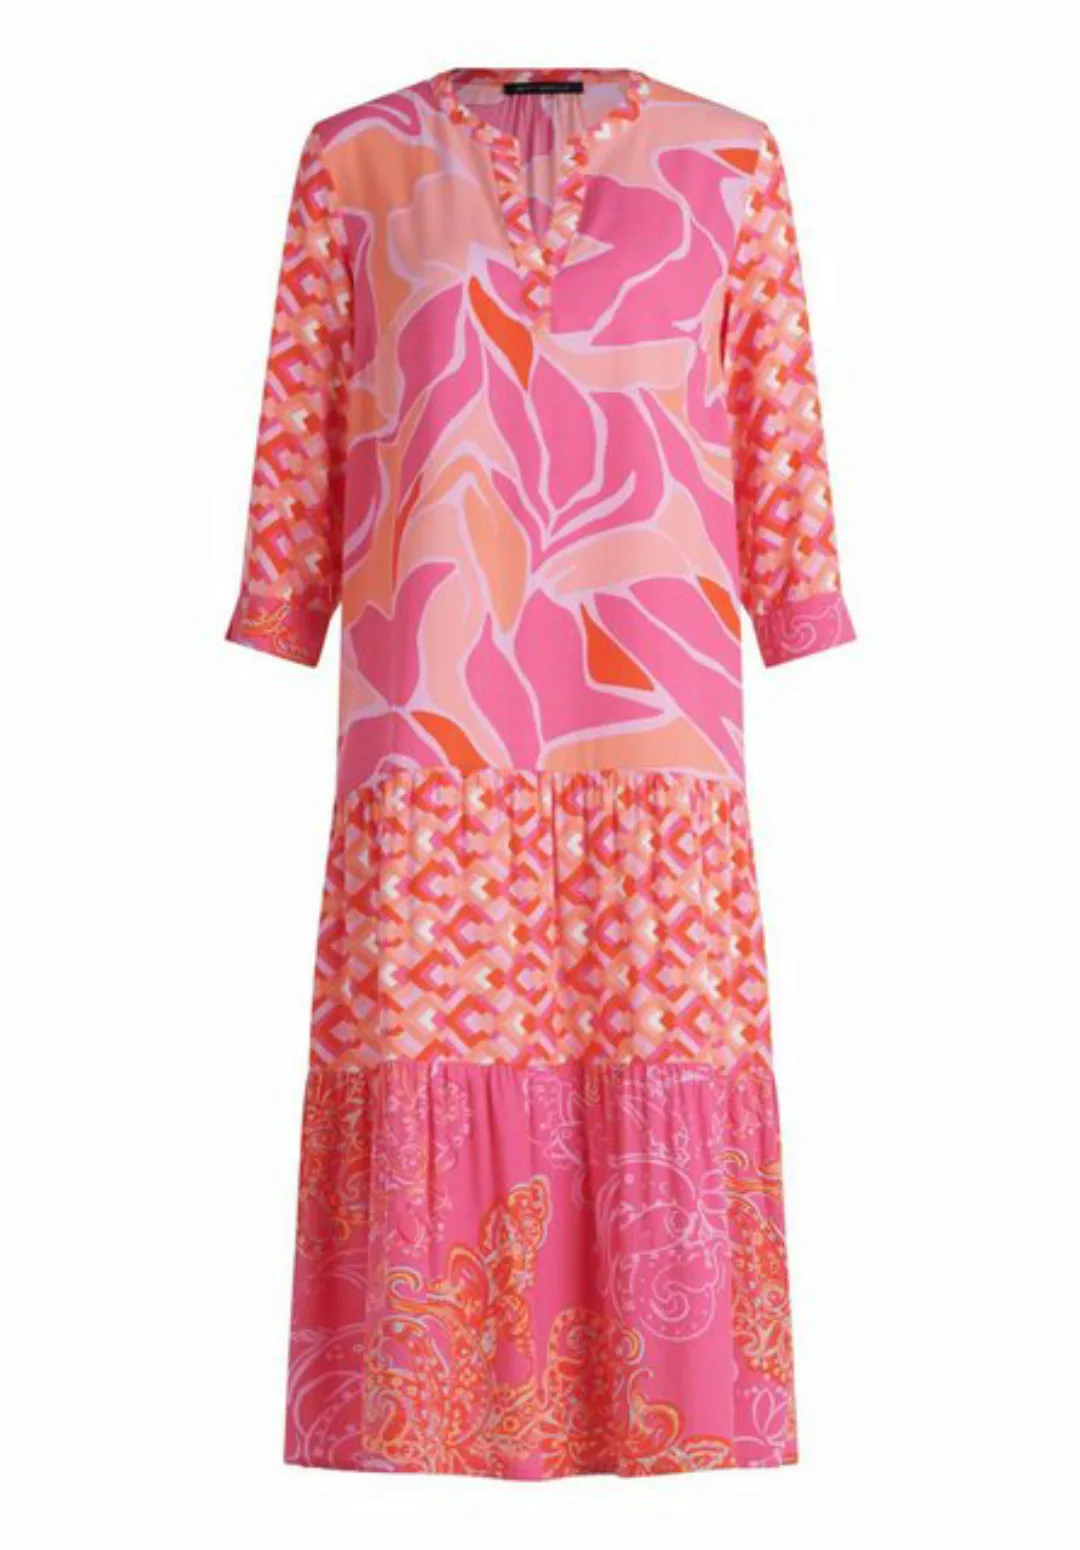 Betty Barclay Sommerkleid Kleid Lang 3/4 Arm günstig online kaufen